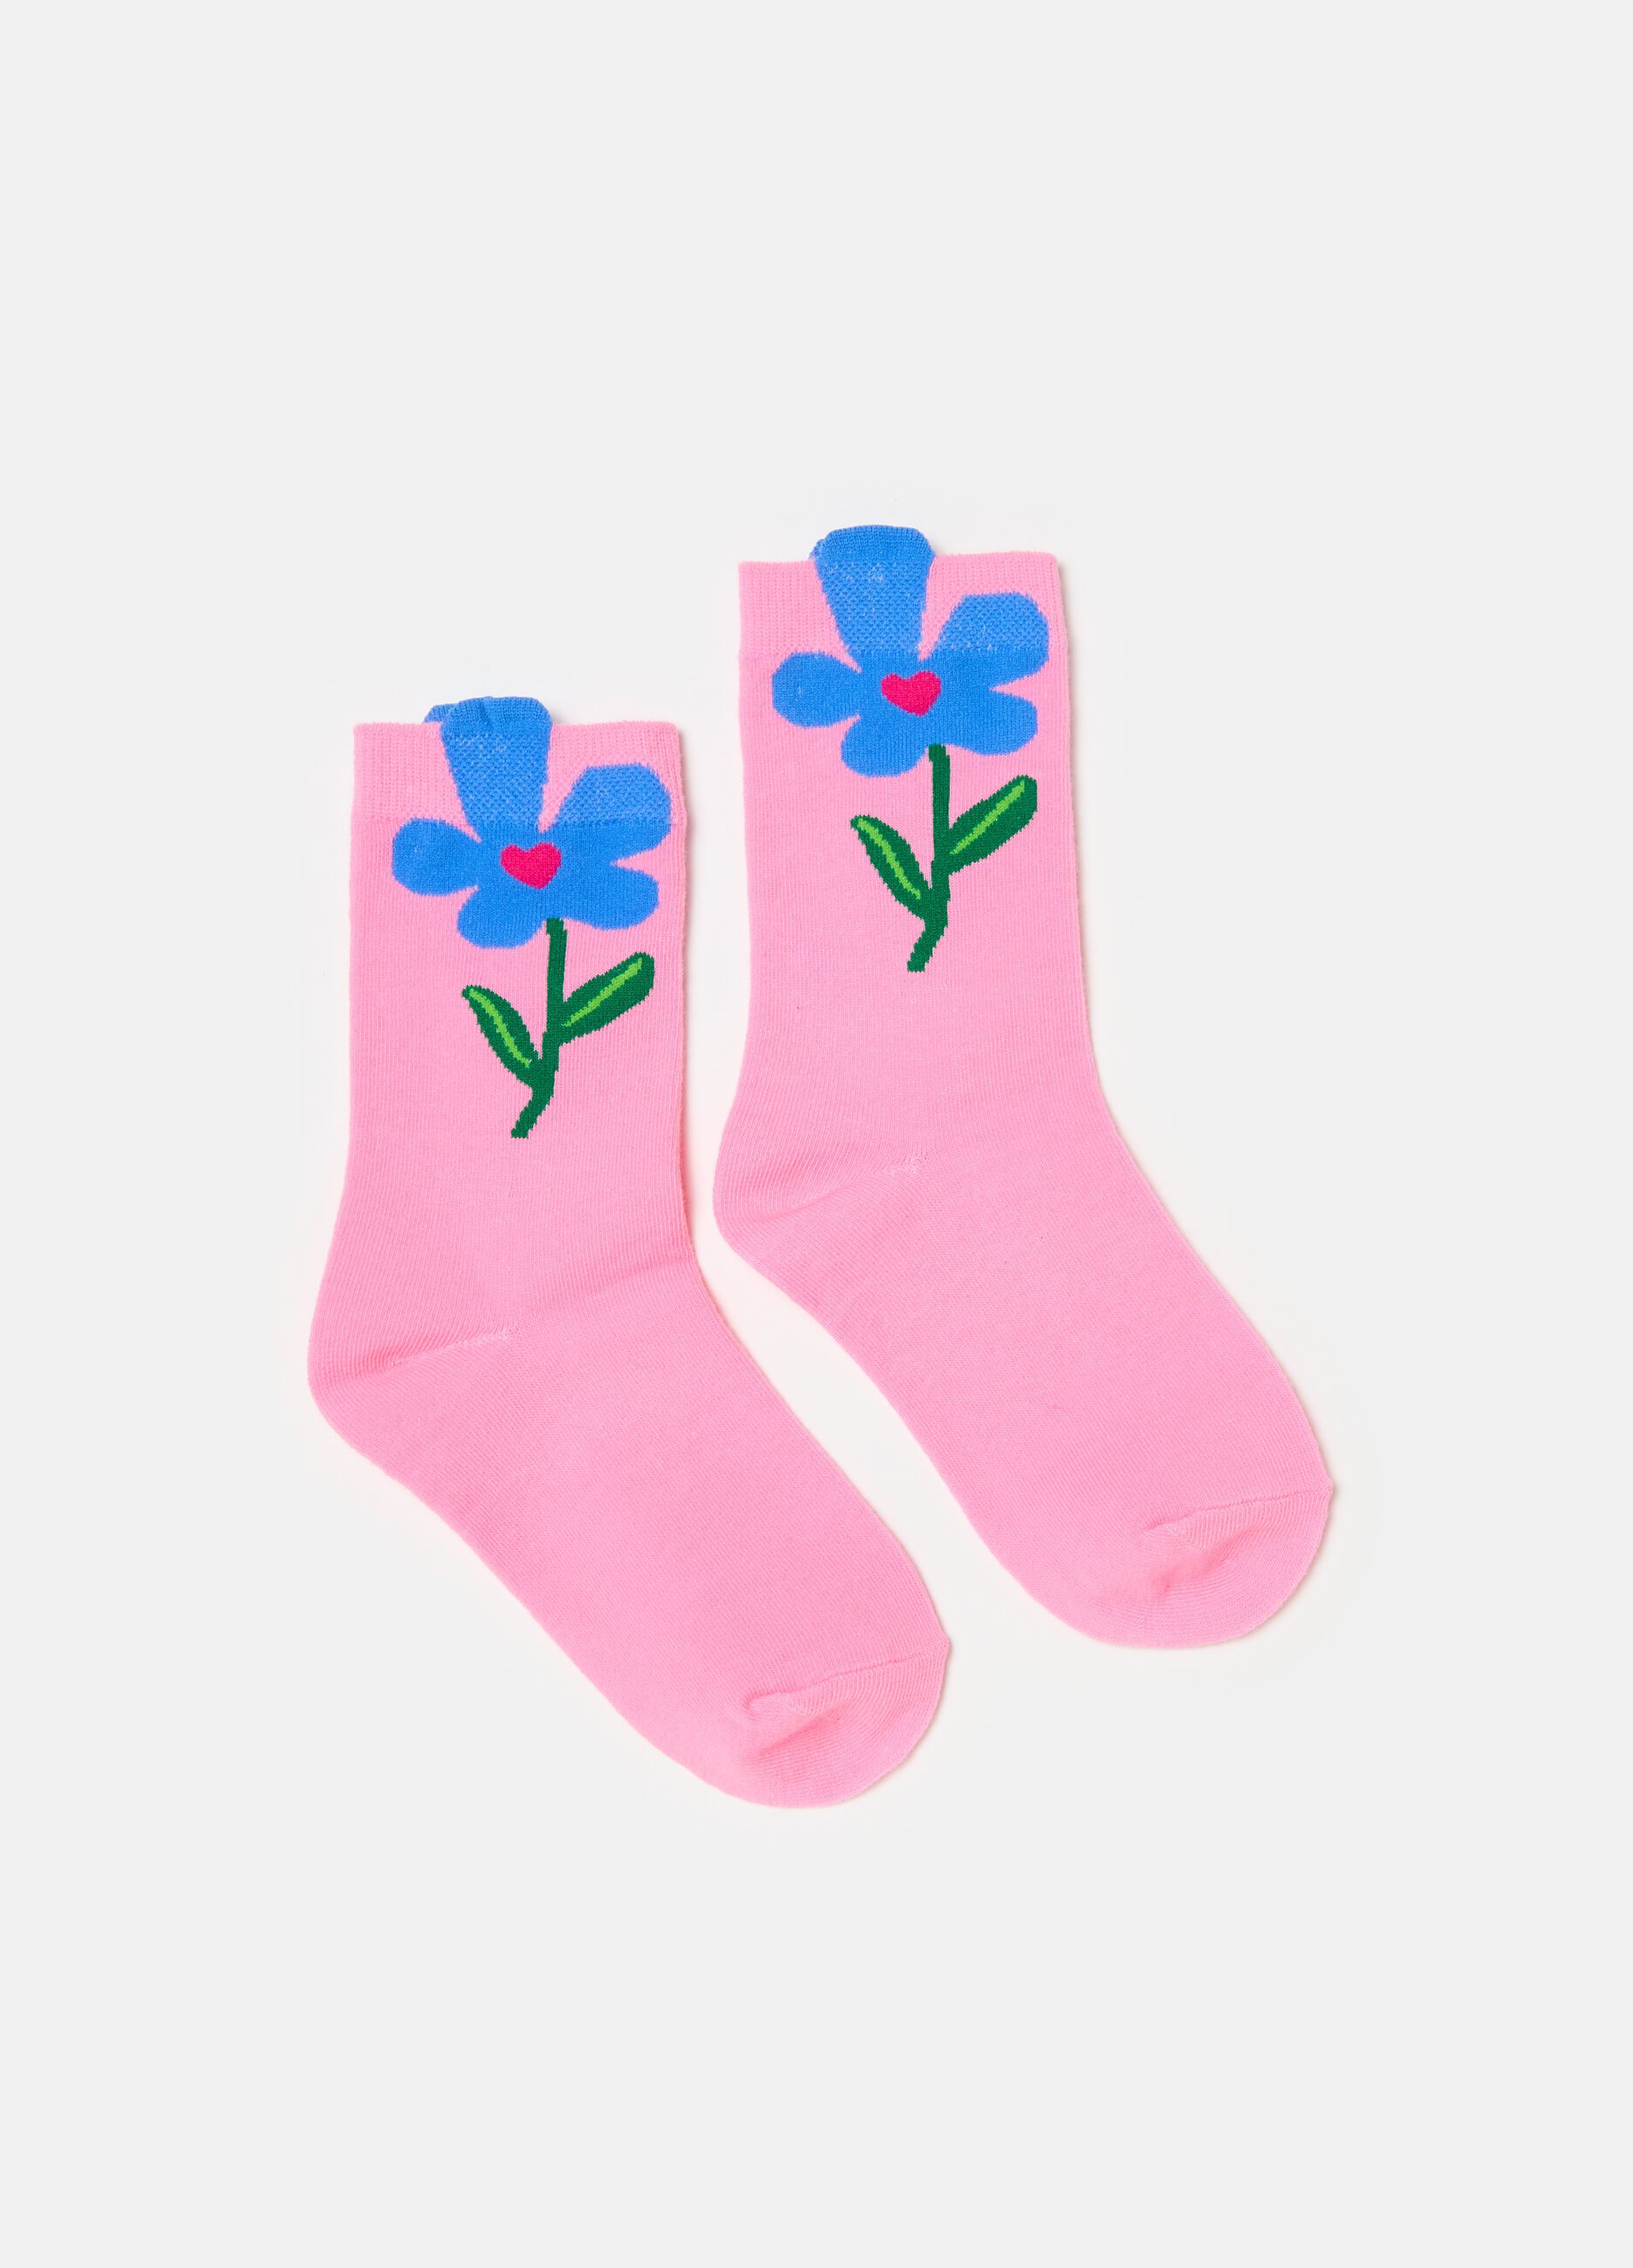 Socks with flower design